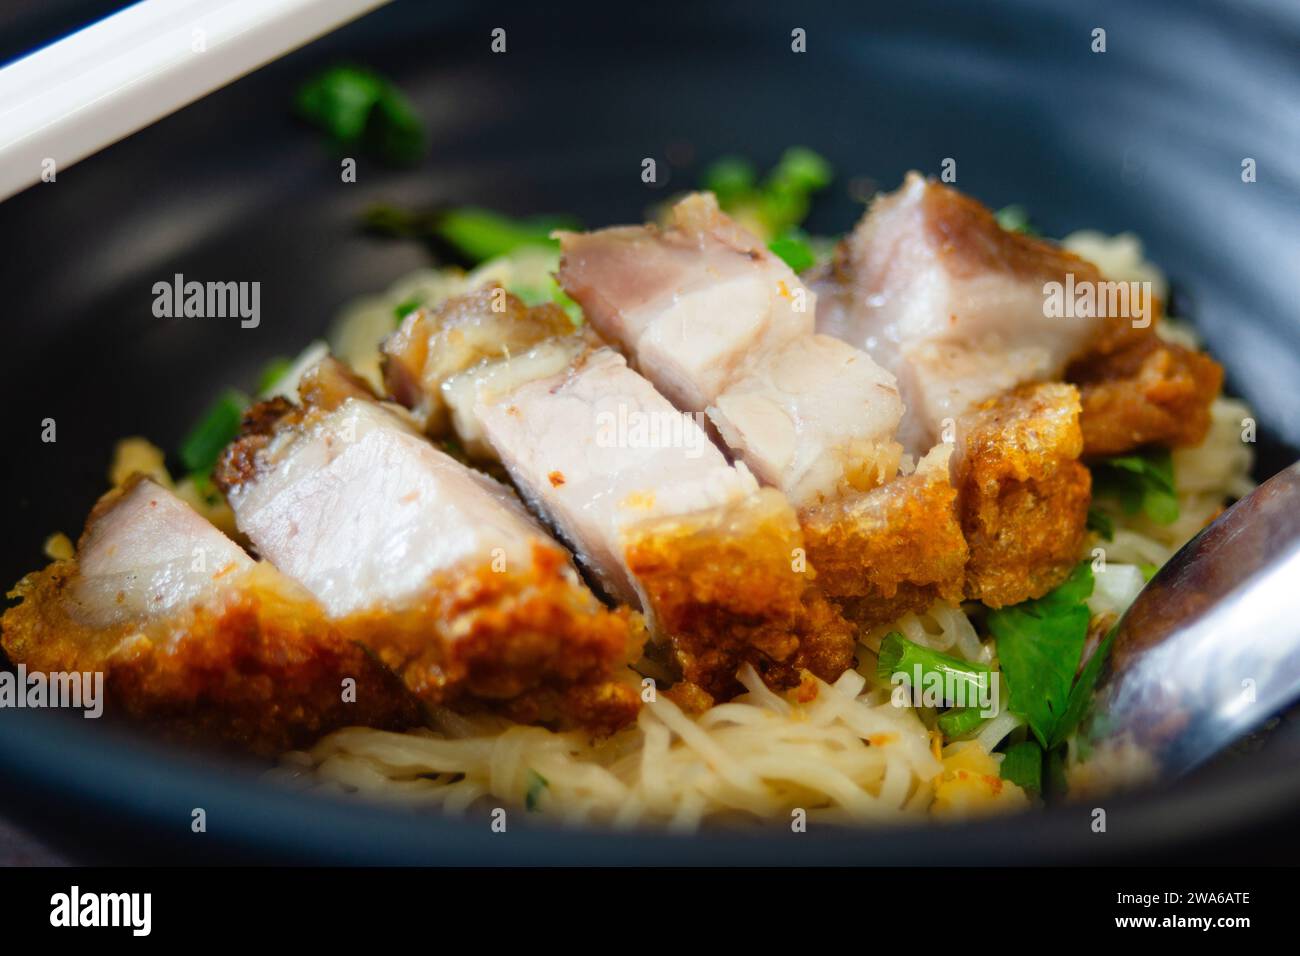 Una ciotola di noodle all'uovo servita con una croccante pancetta di maiale. In Tailandia, gli spaghetti e la croccante pancetta di maiale sono uno dei piatti più amati. Foto Stock